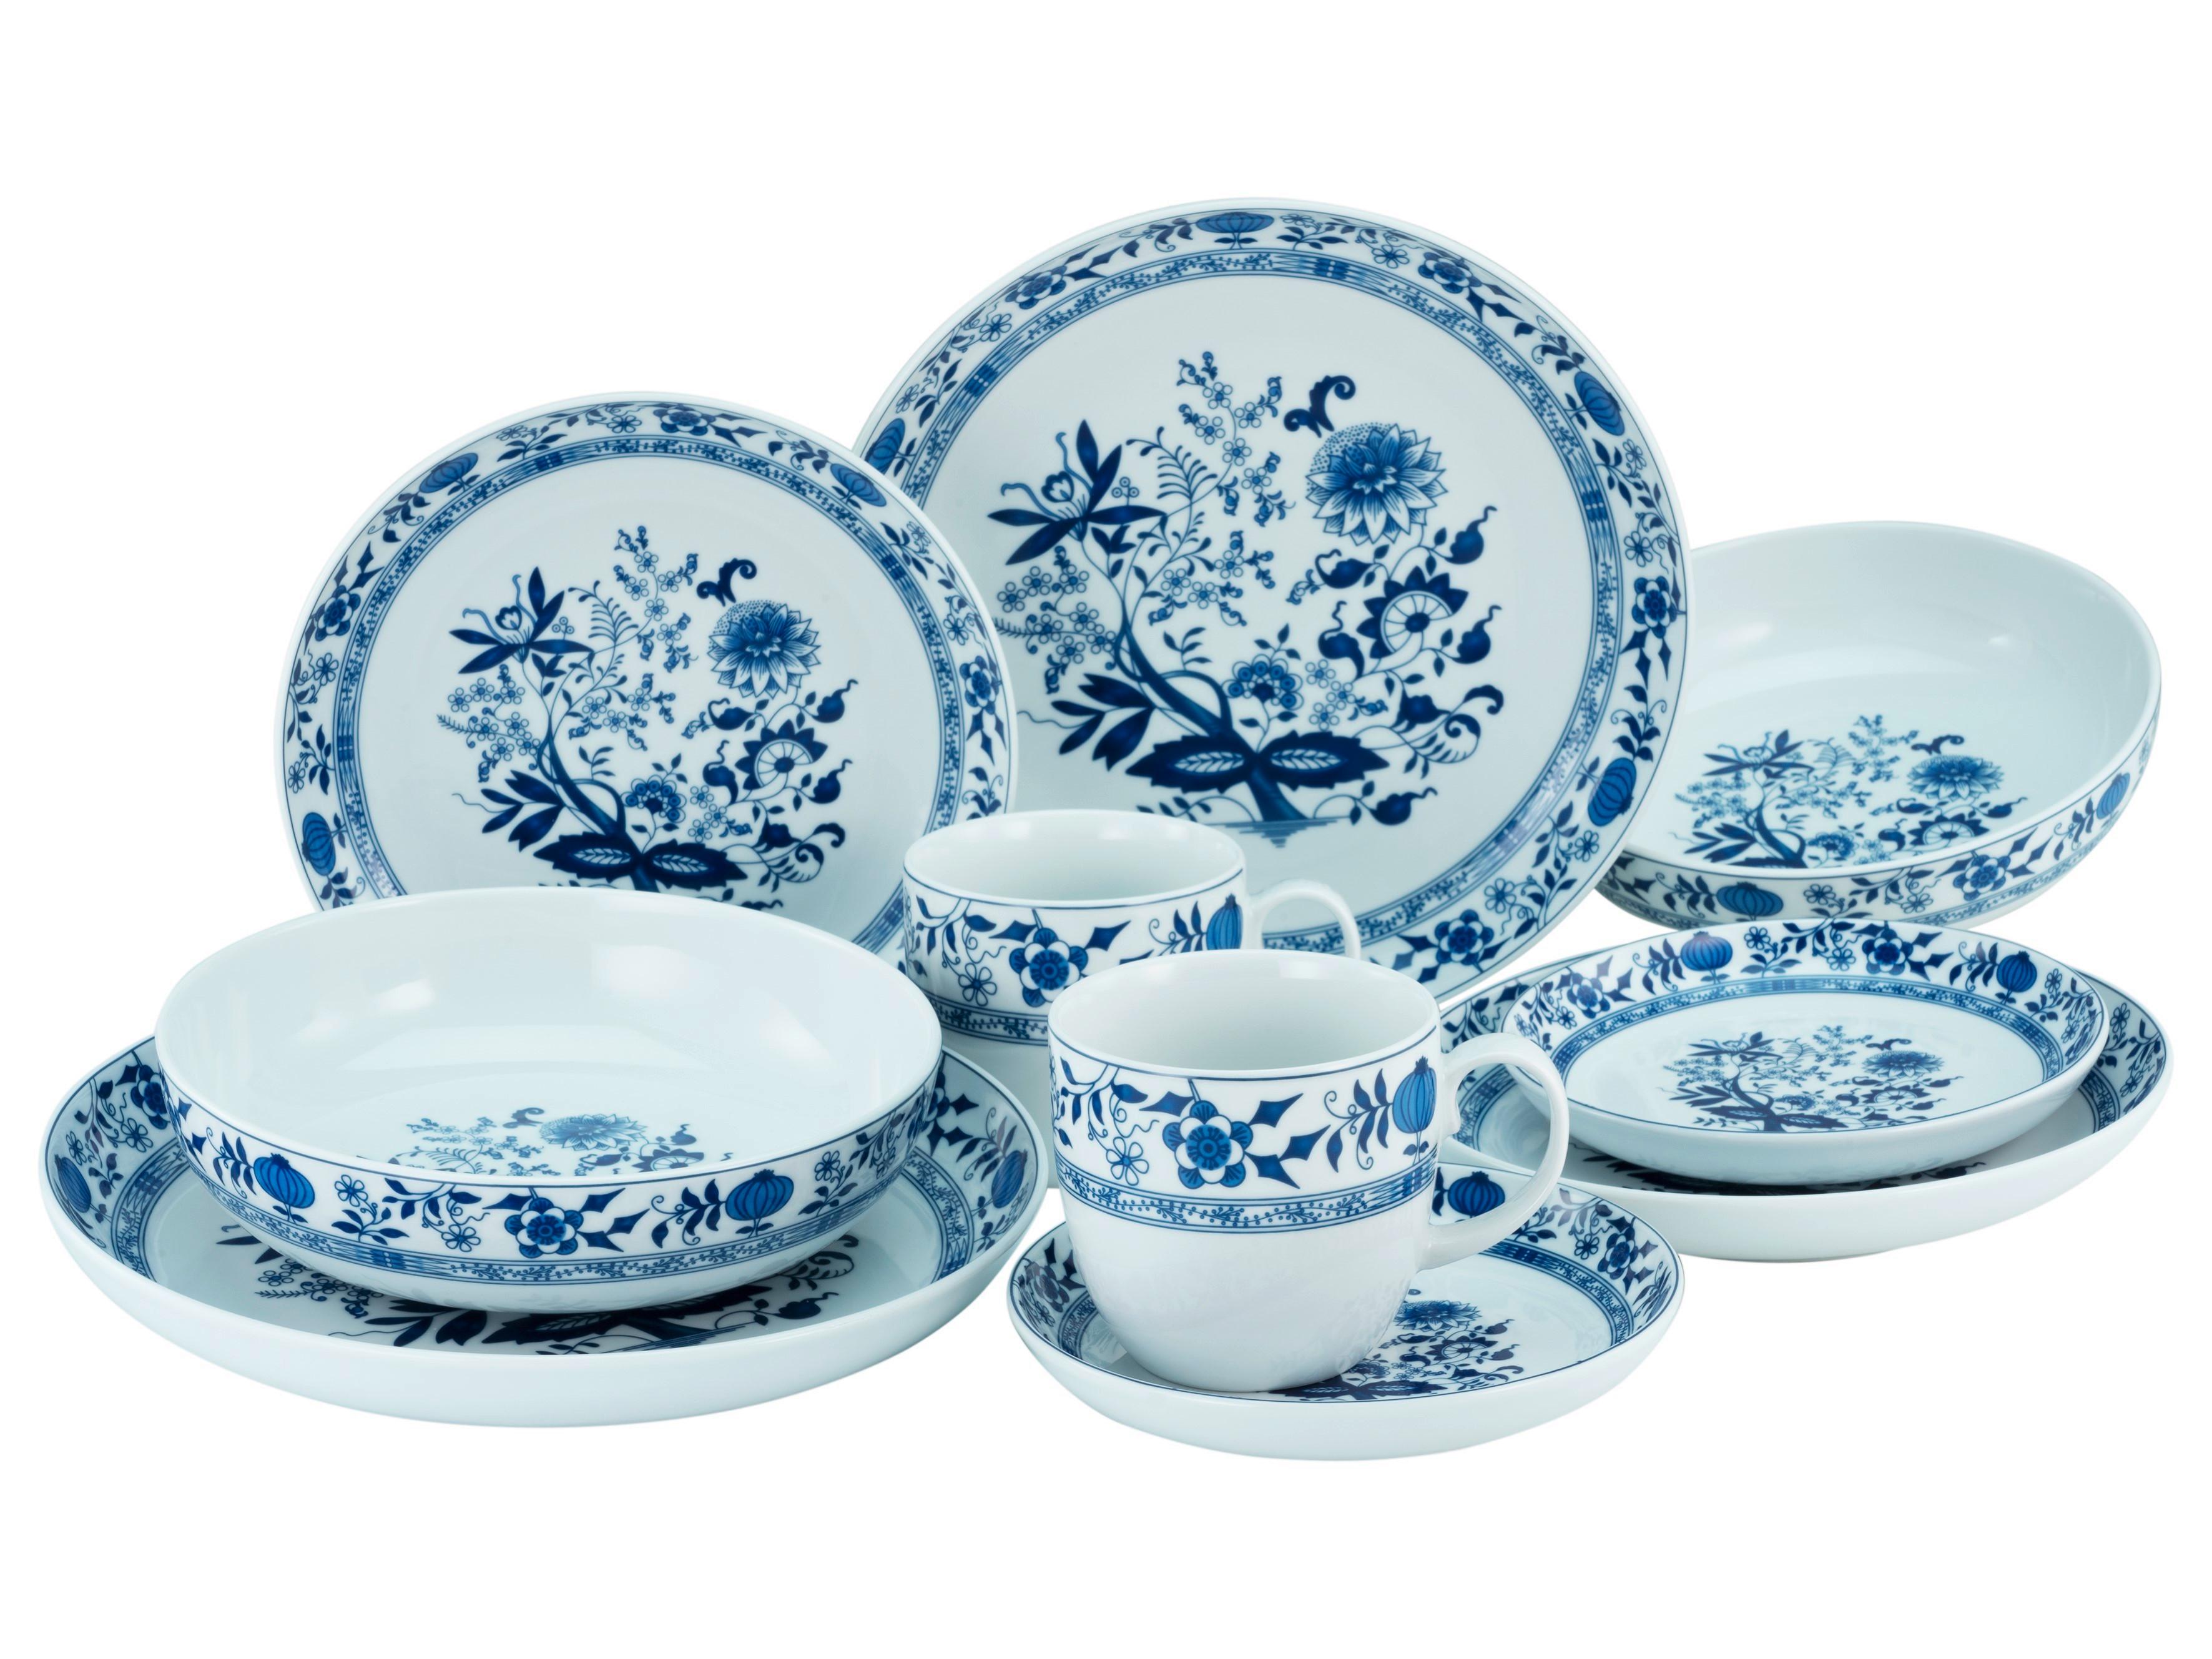 Kombinovaná Souprava Allround Cibulový Vzor, 10-Dílný - bílá/modrá, Basics, keramika - Creatable